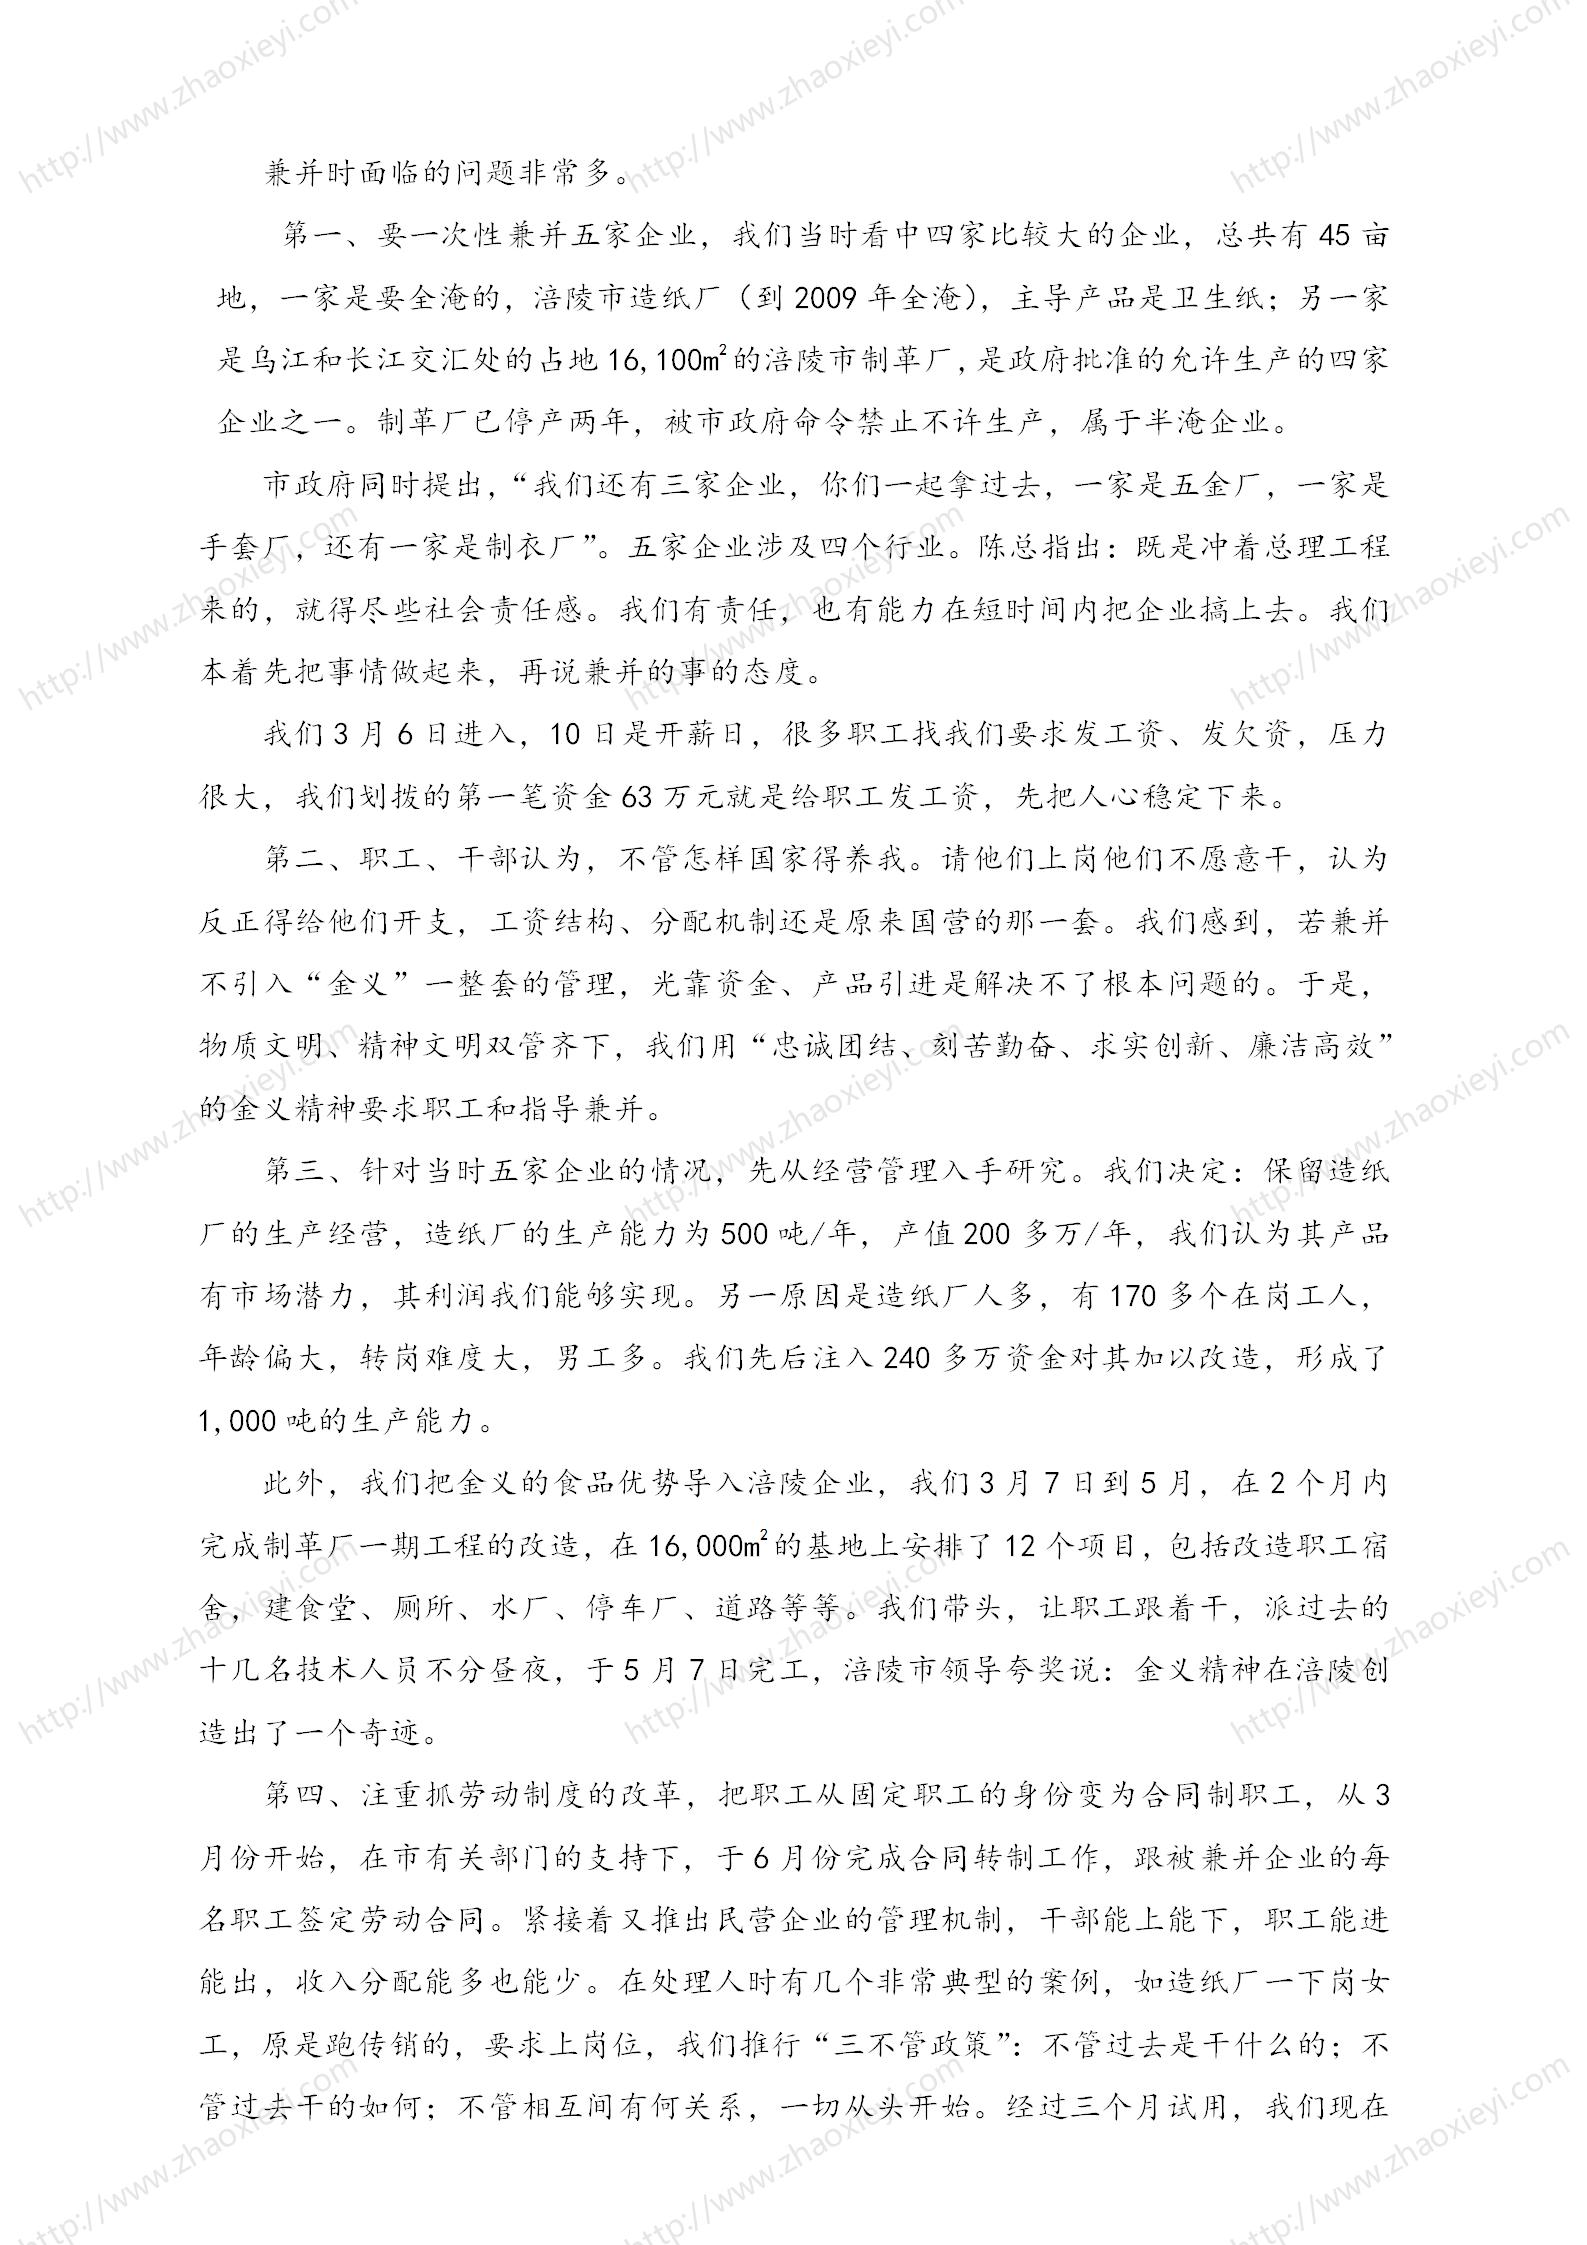 中国企业并购经典案例_136.jpg